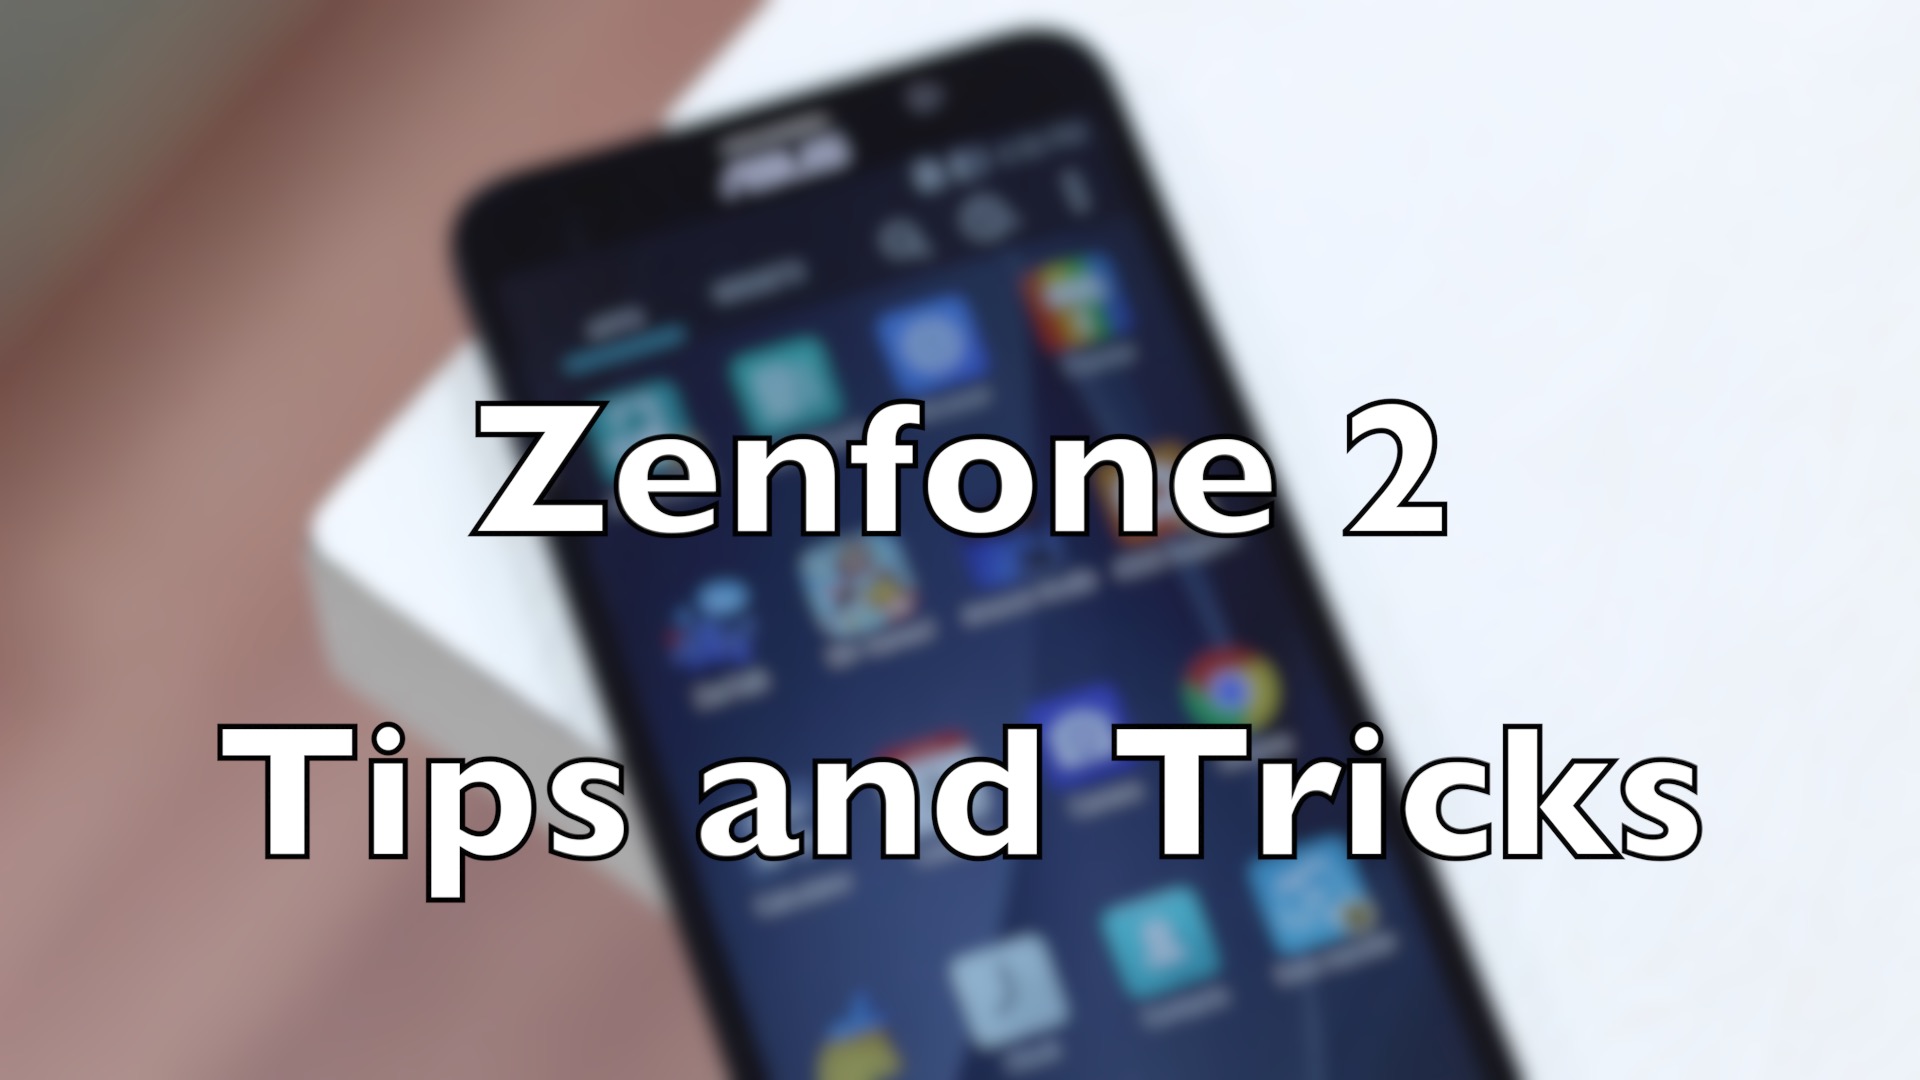 asus zenfone 2レーザー壁紙,携帯電話,ガジェット,スマートフォン,通信機器,ポータブル通信デバイス